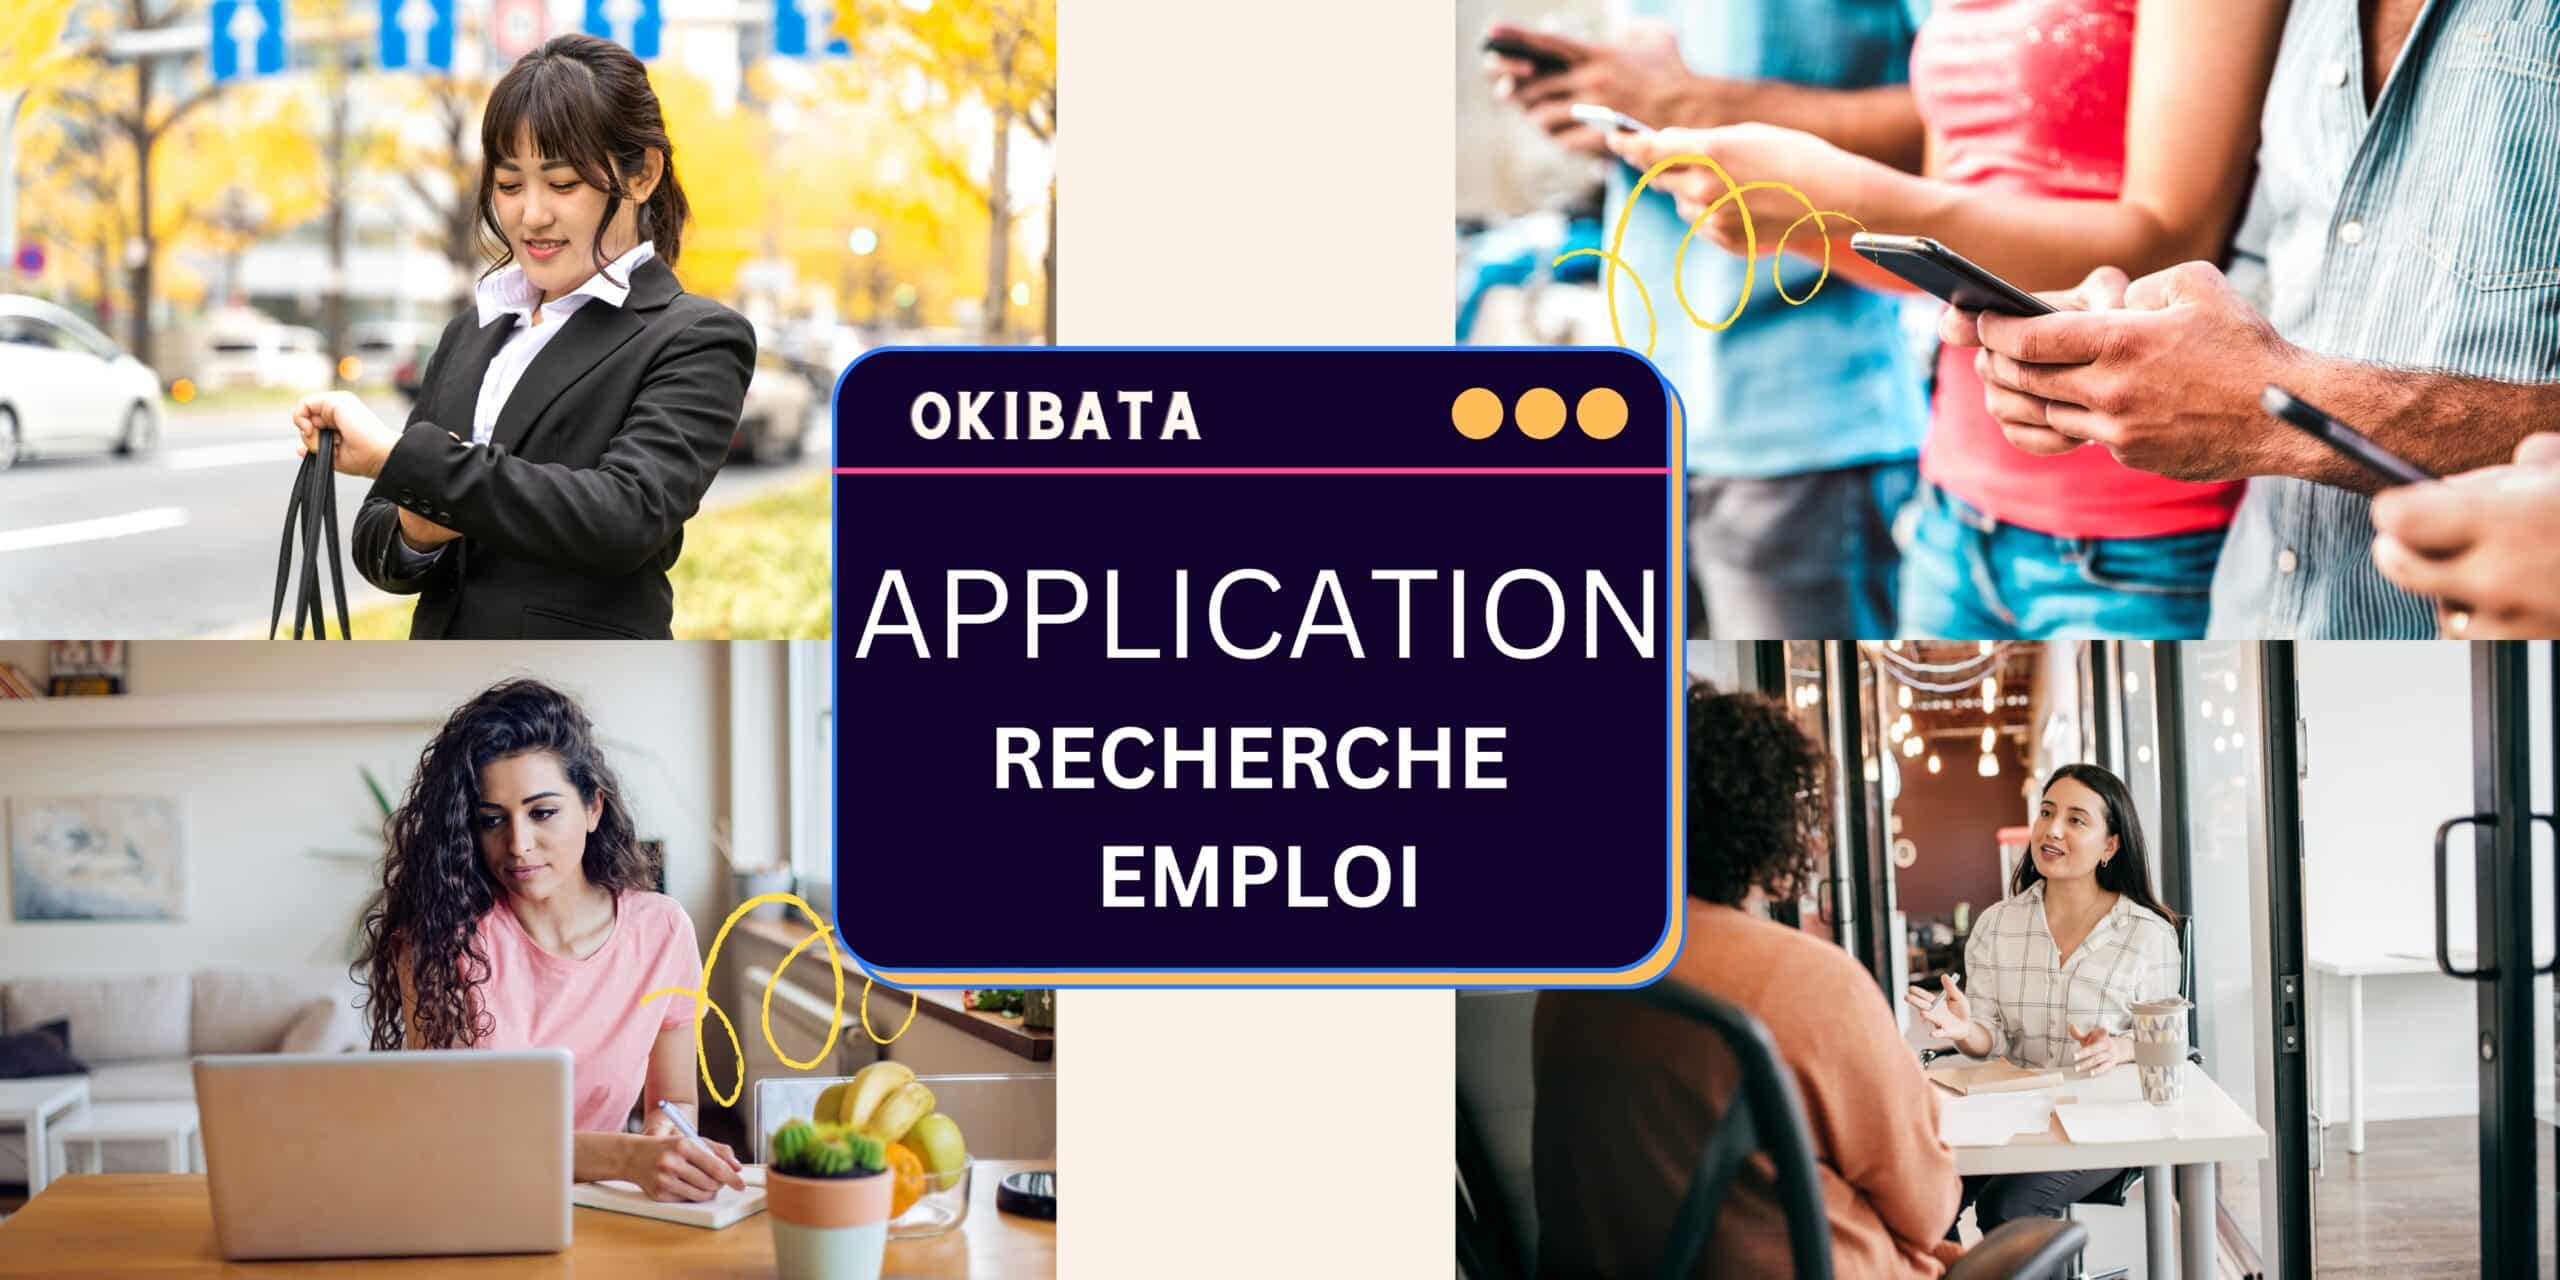 Application de recherche d'emploi : trouvez votre poste idéal en un clic okibata application recherche emploi scaled